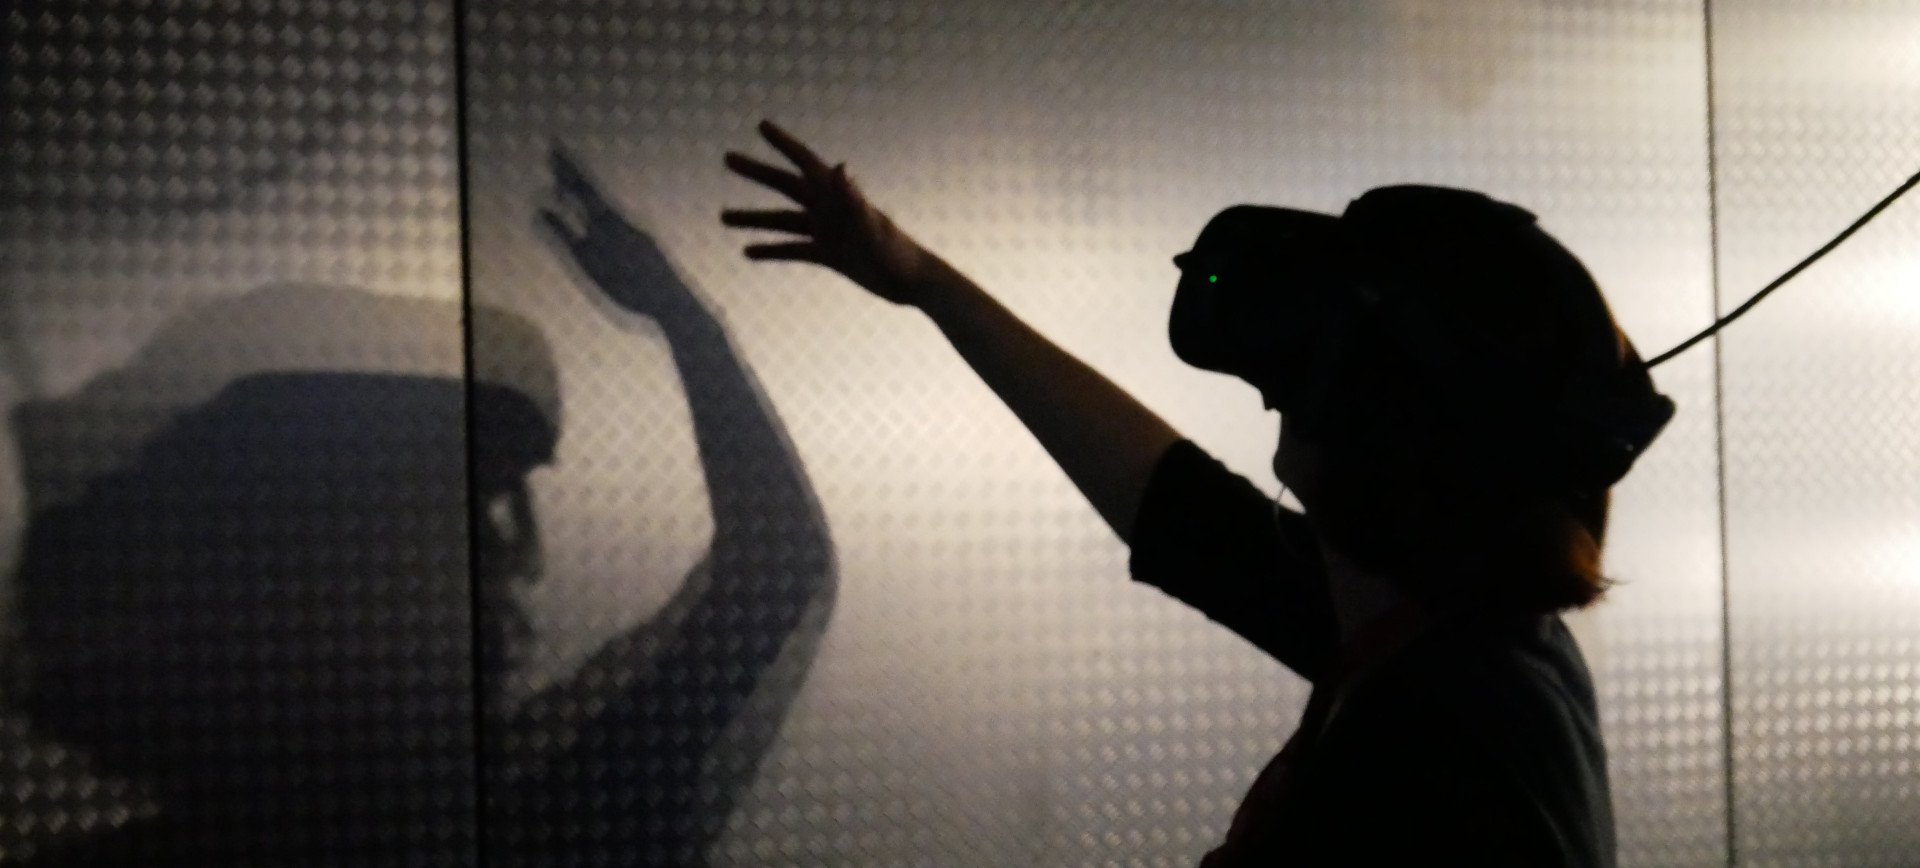 La realtà in fabbrica non è più la stessa: applicazioni della realtà virtuale